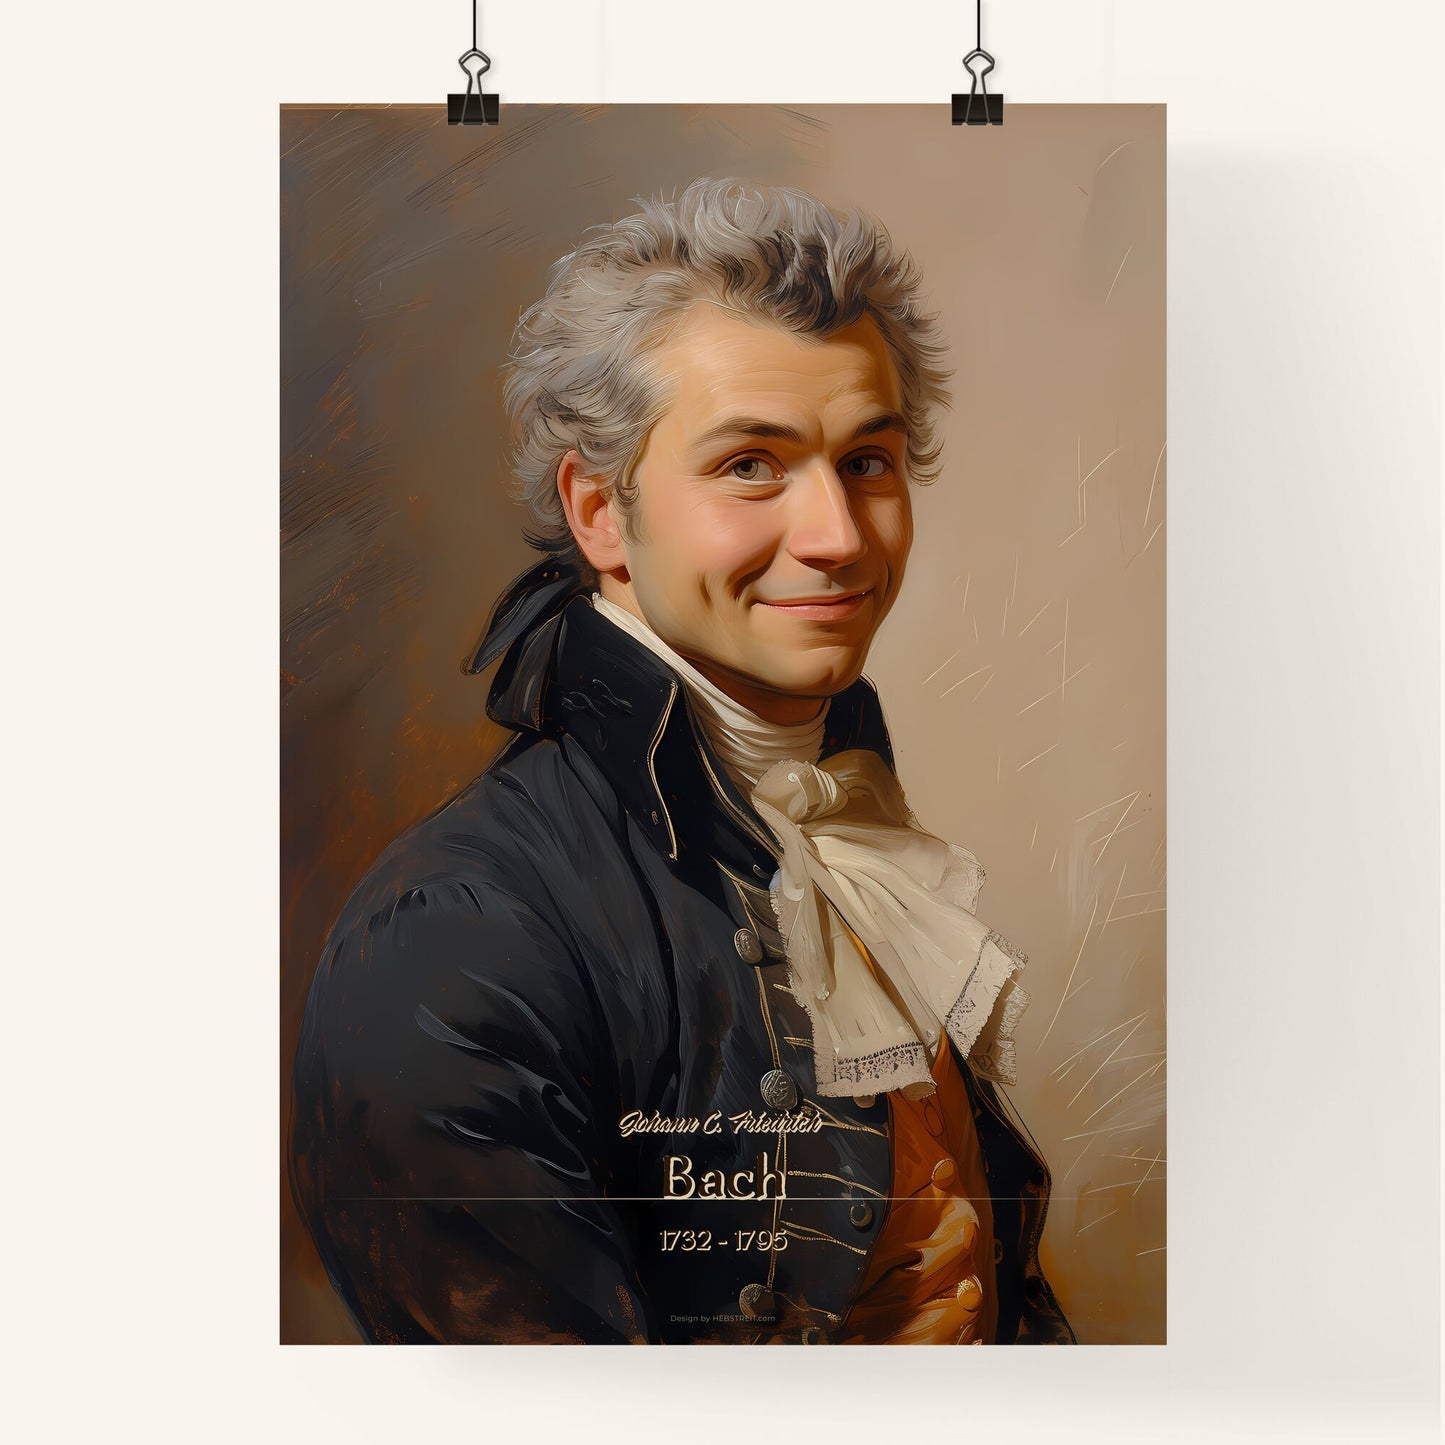 Johann C. Friedrich, Bach, 1732 - 1795, A Poster of a man in a garment Default Title